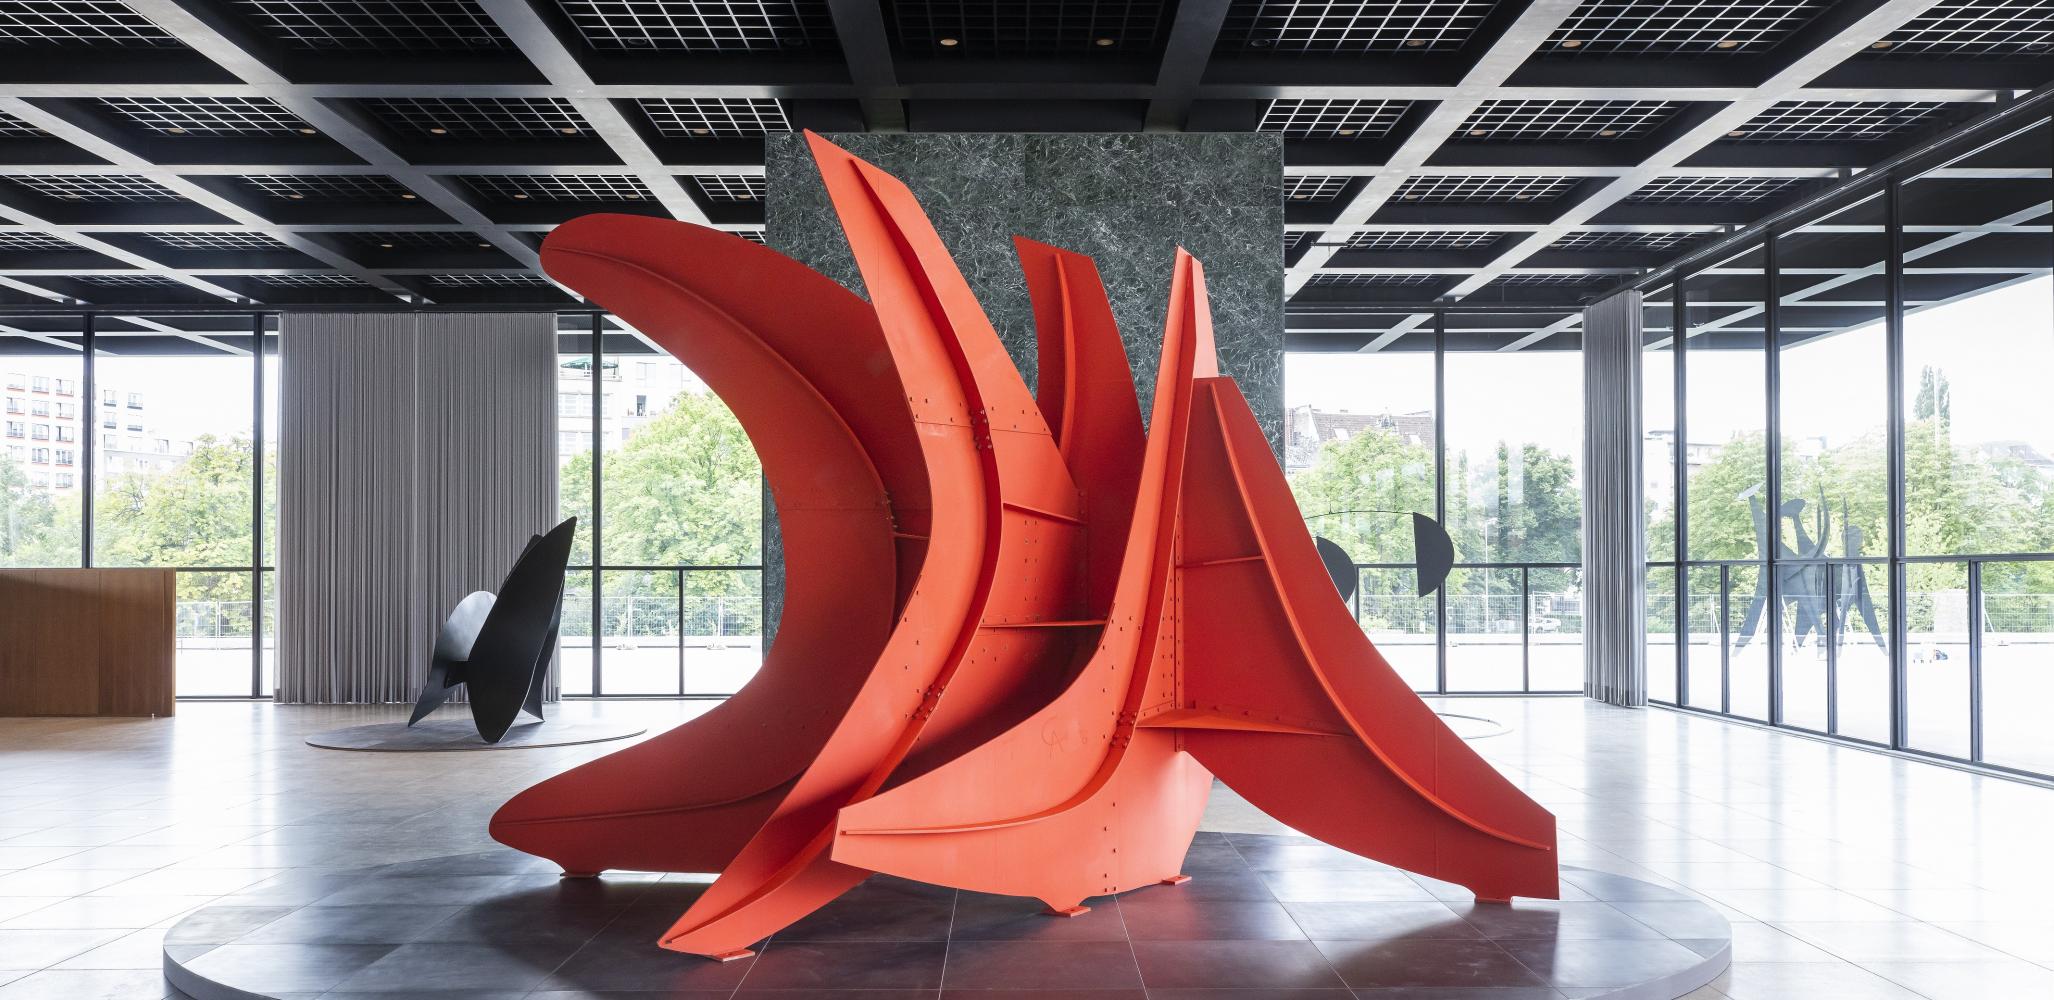 Alexander Calder "Five Swords", 1976, Installationsansicht Neue Nationalgalerie, 2021